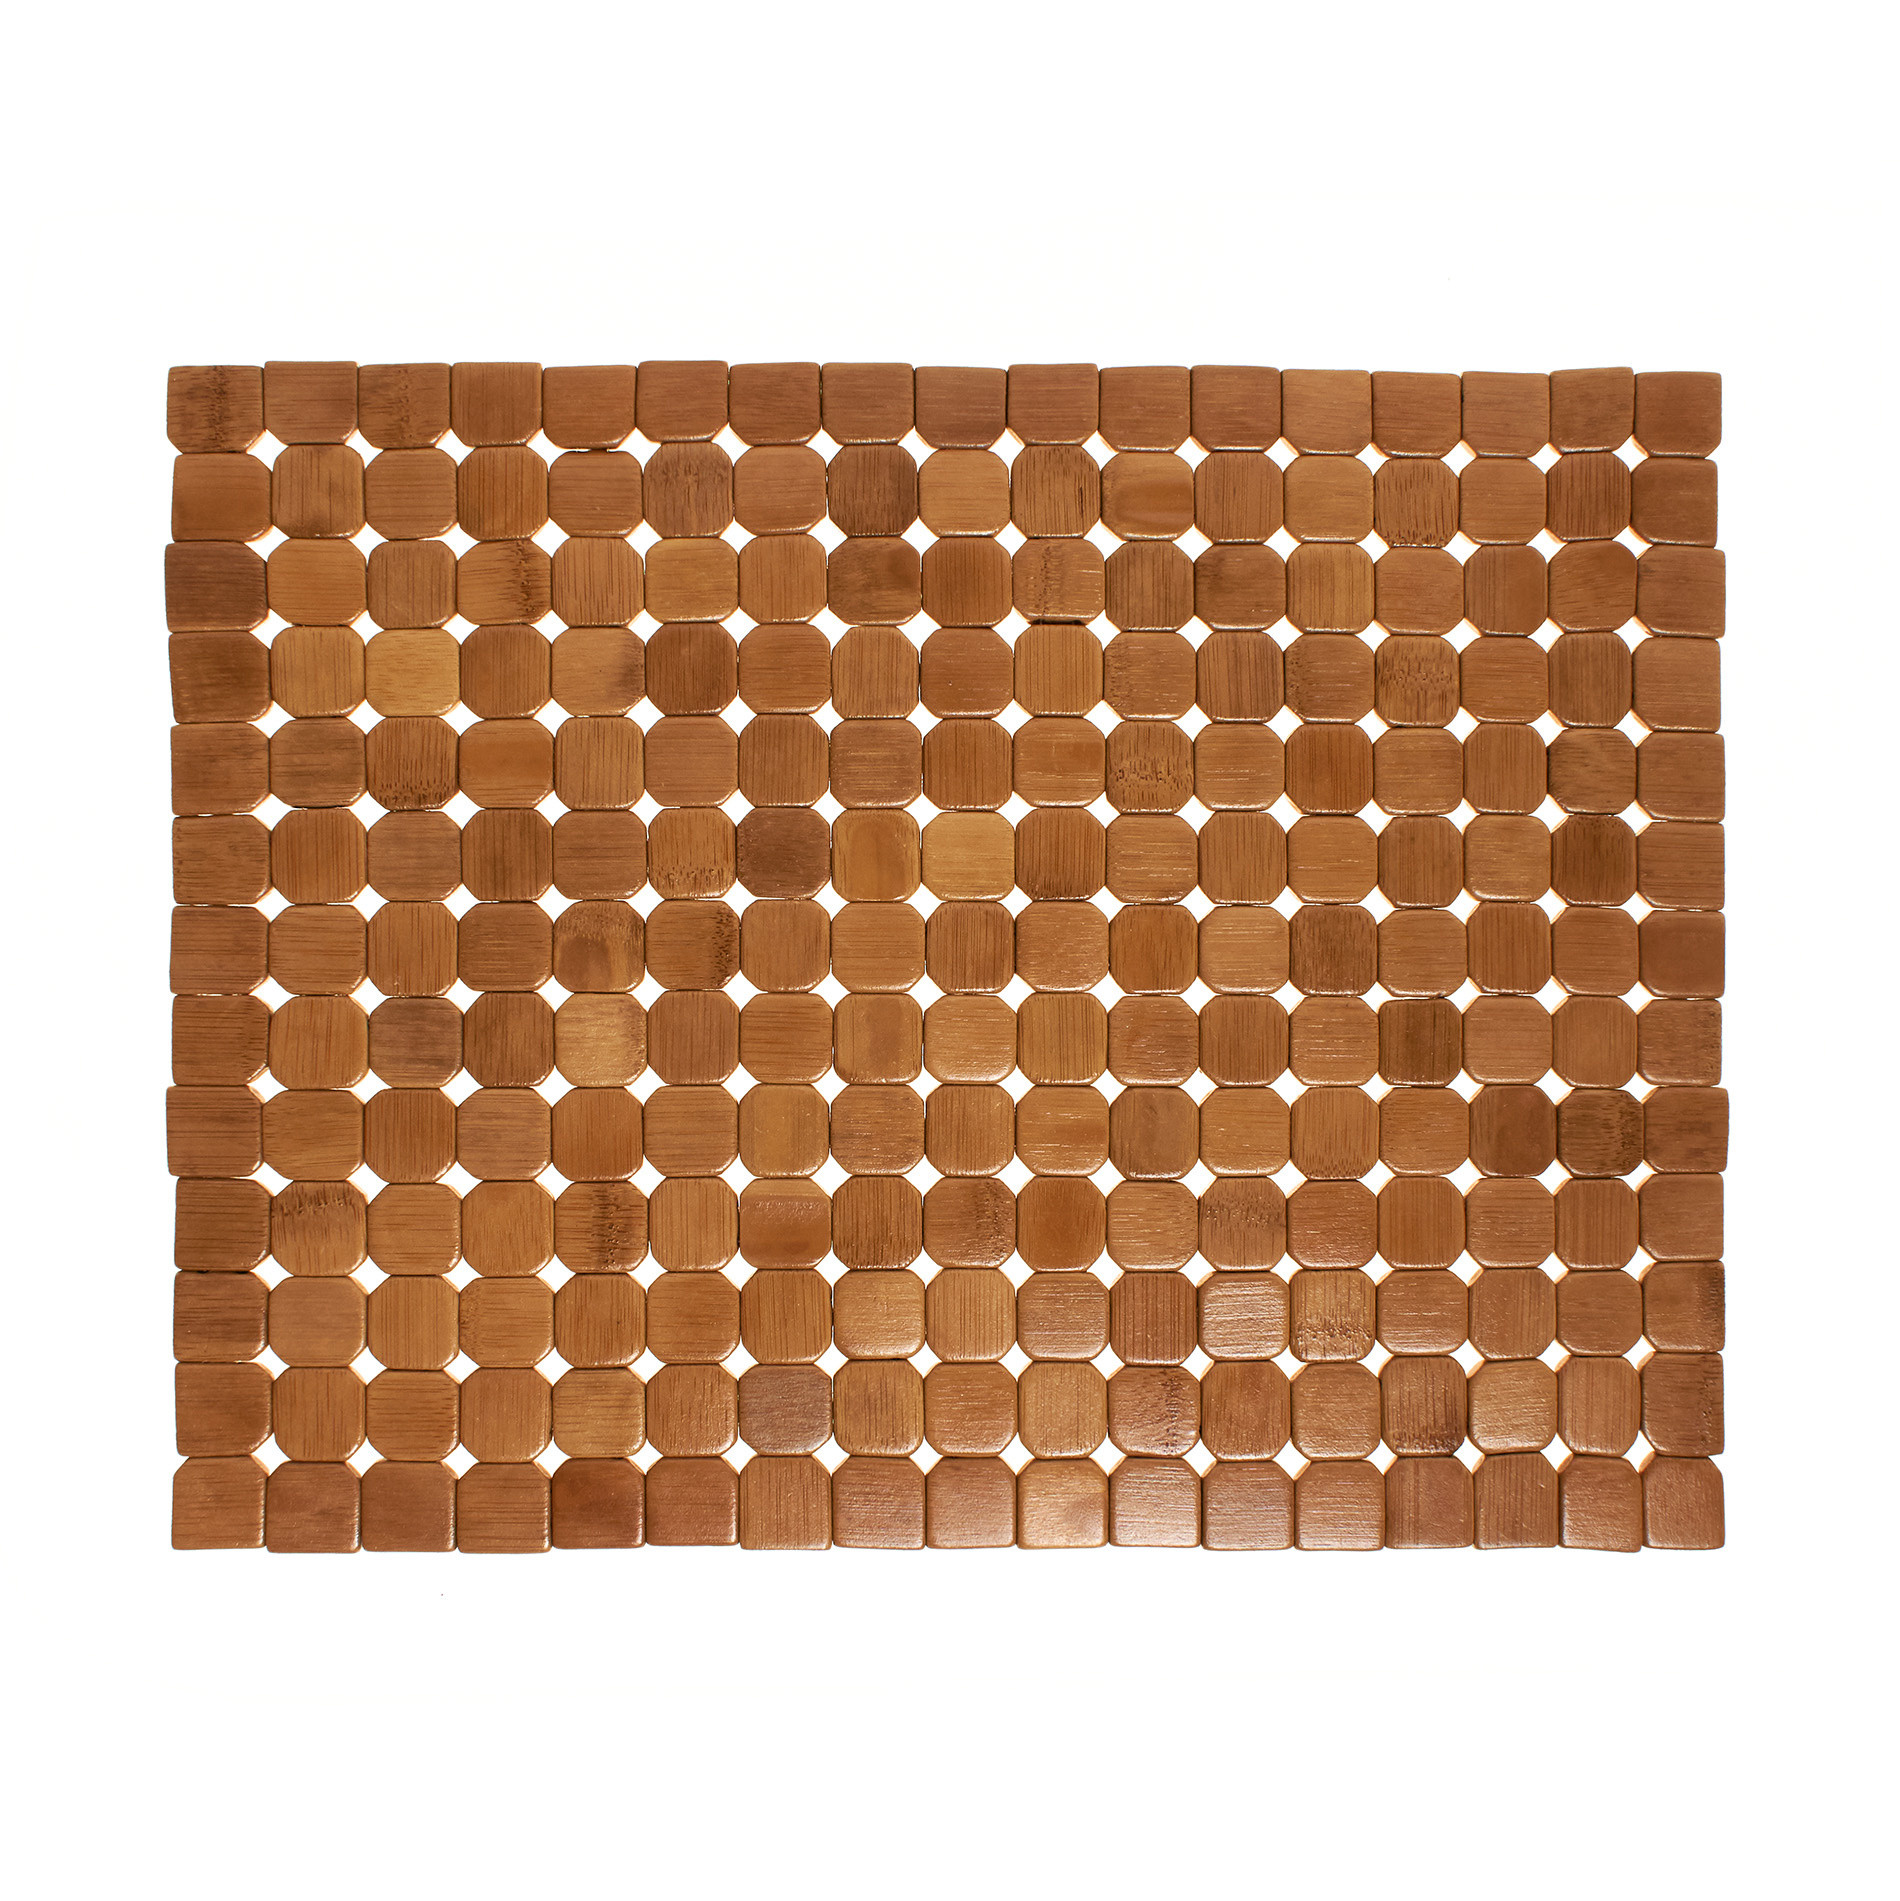 цена Расписной бамбуковый коврик для столовых приборов Coincasa, светло-коричневый